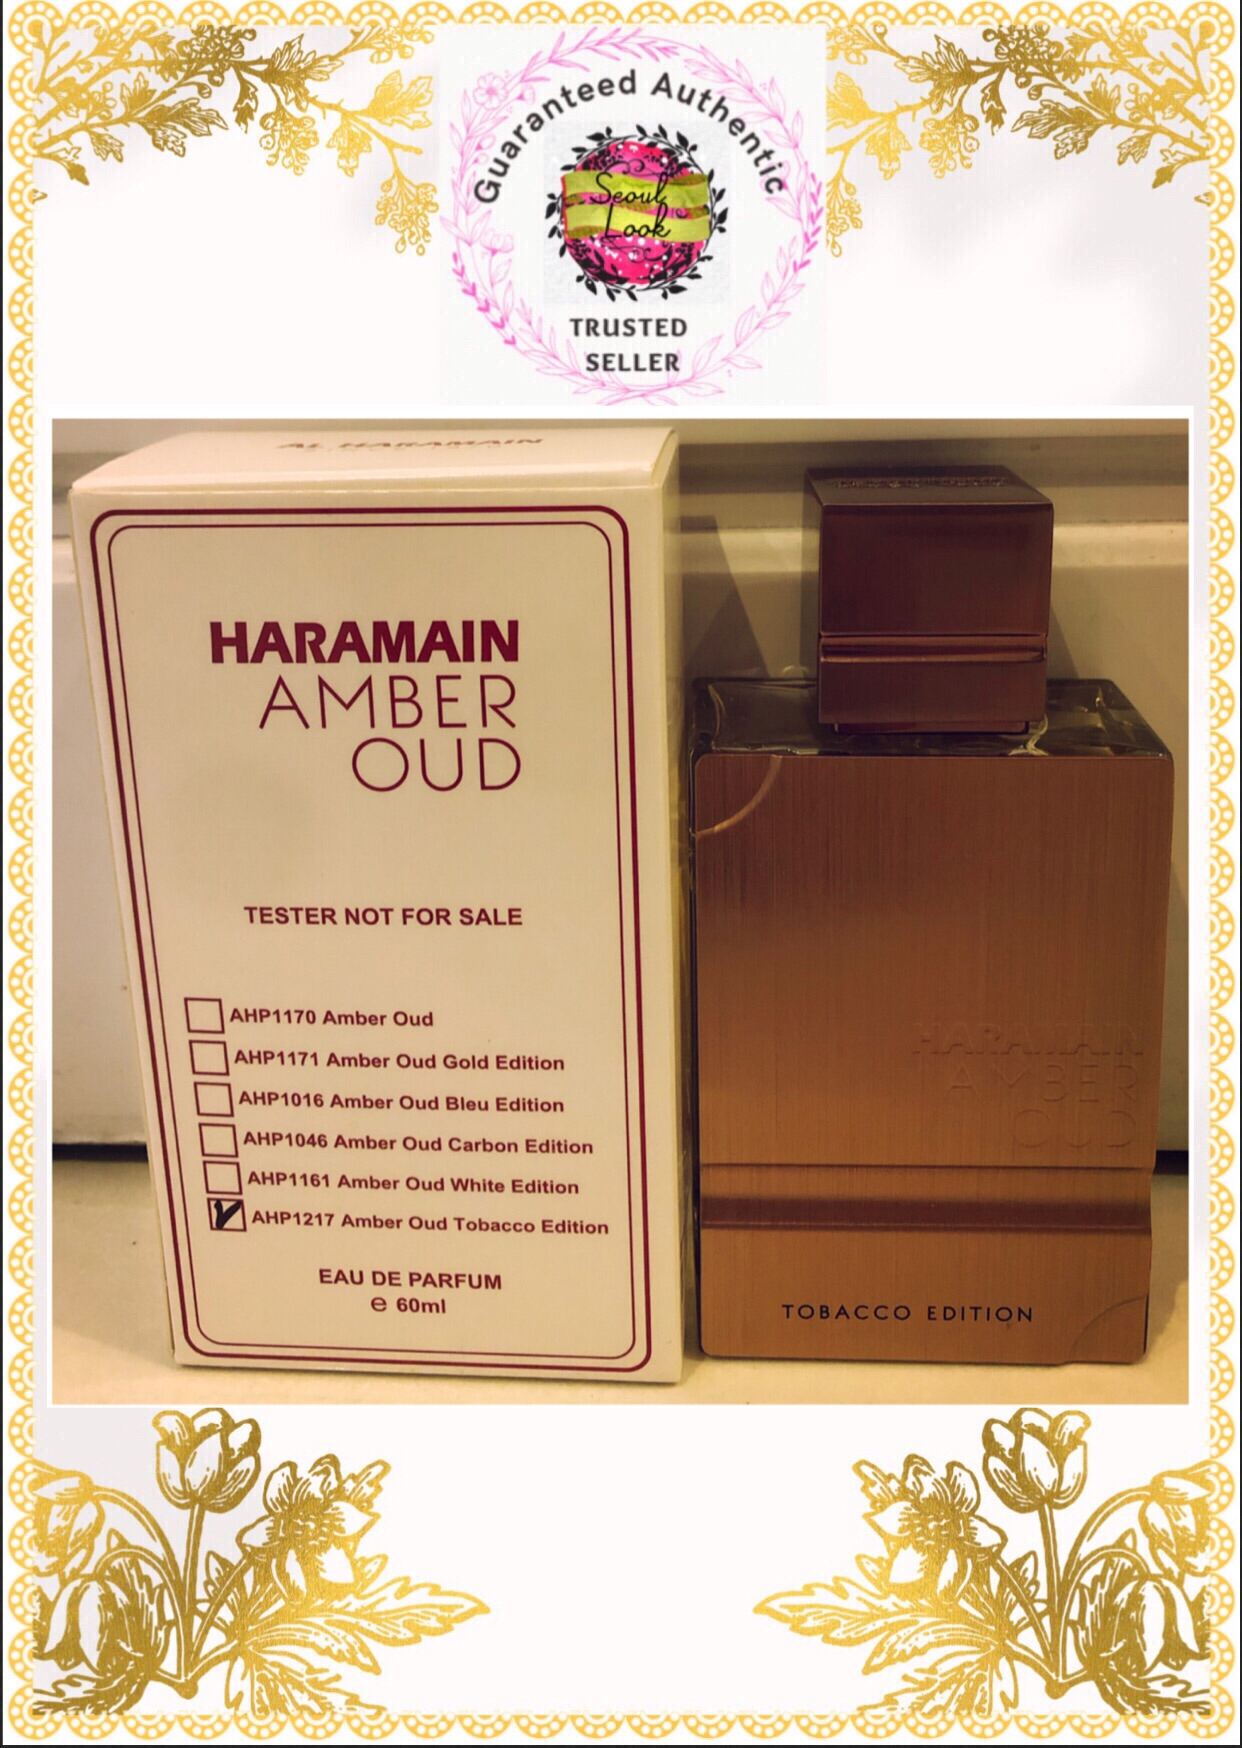 Al-Haramain Amber Oud White Edition 2.0 oz Unisex – peuphoriamiami